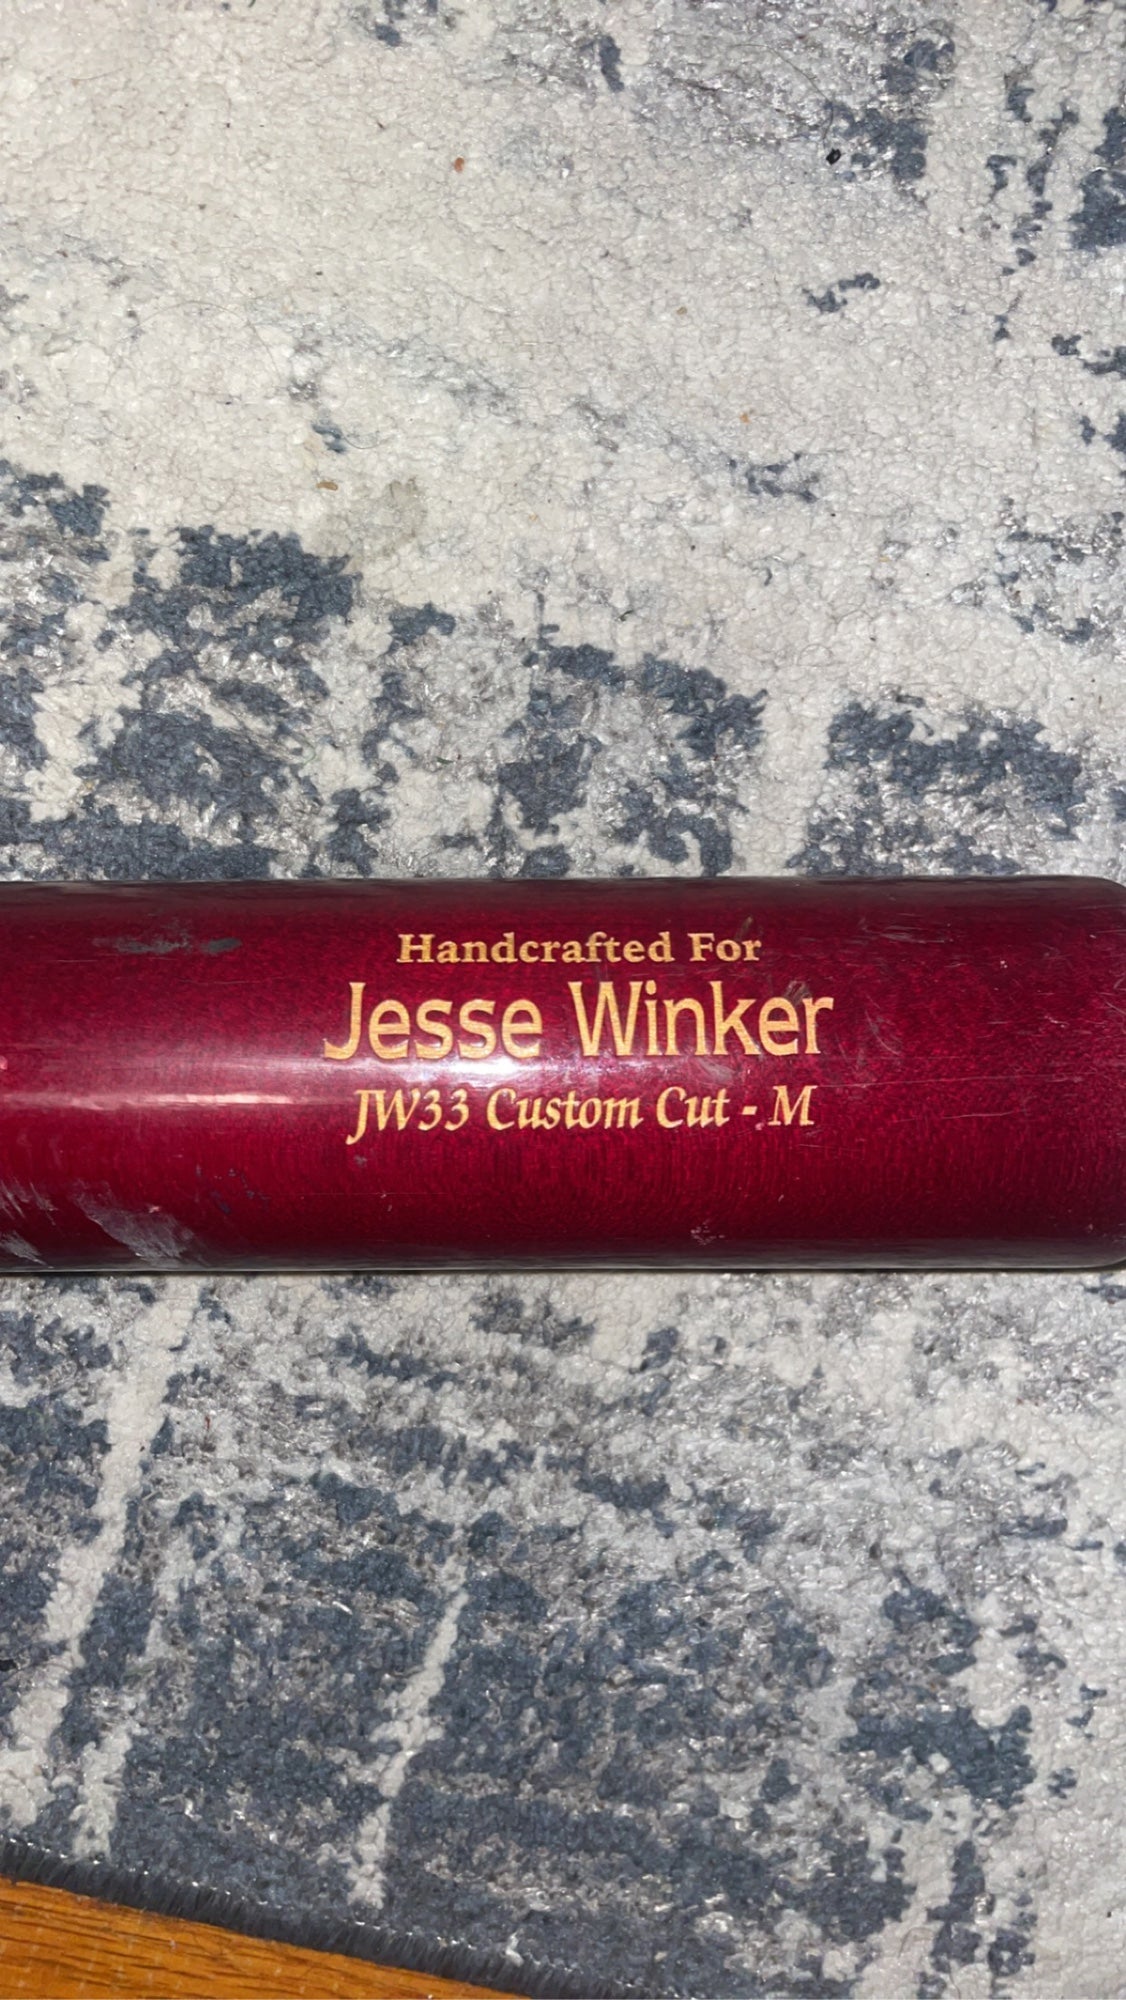 Jesse Winker Jersey, Jesse Winker Gear and Apparel